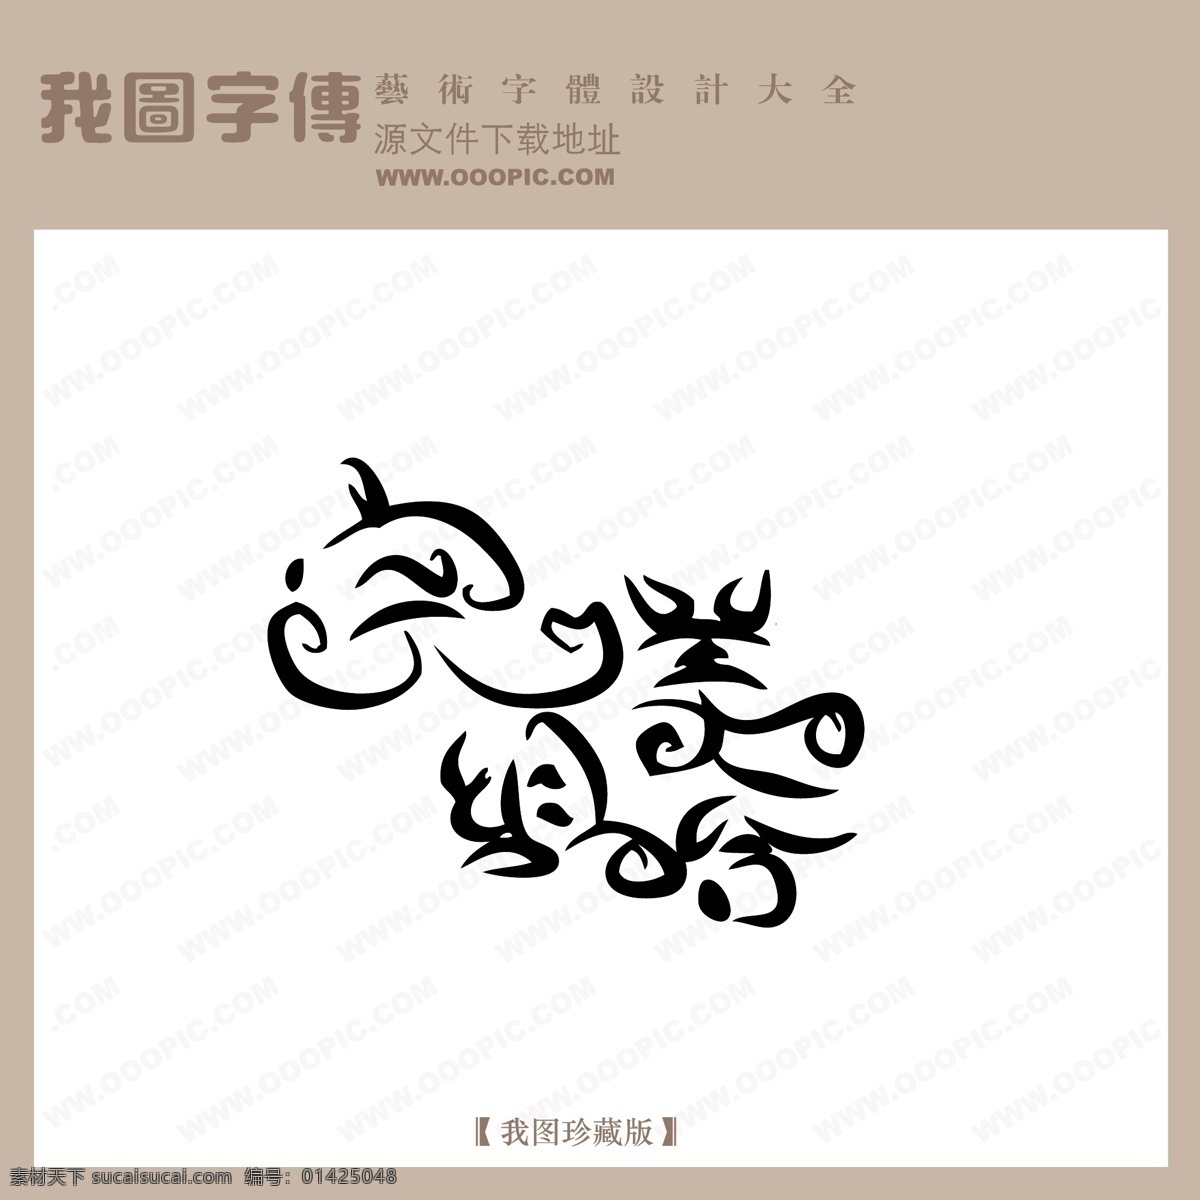 完美 组合 中文 现代艺术 字 美工 艺术 中国 字体下载 创意 中国字体下载 完美组合 矢量图